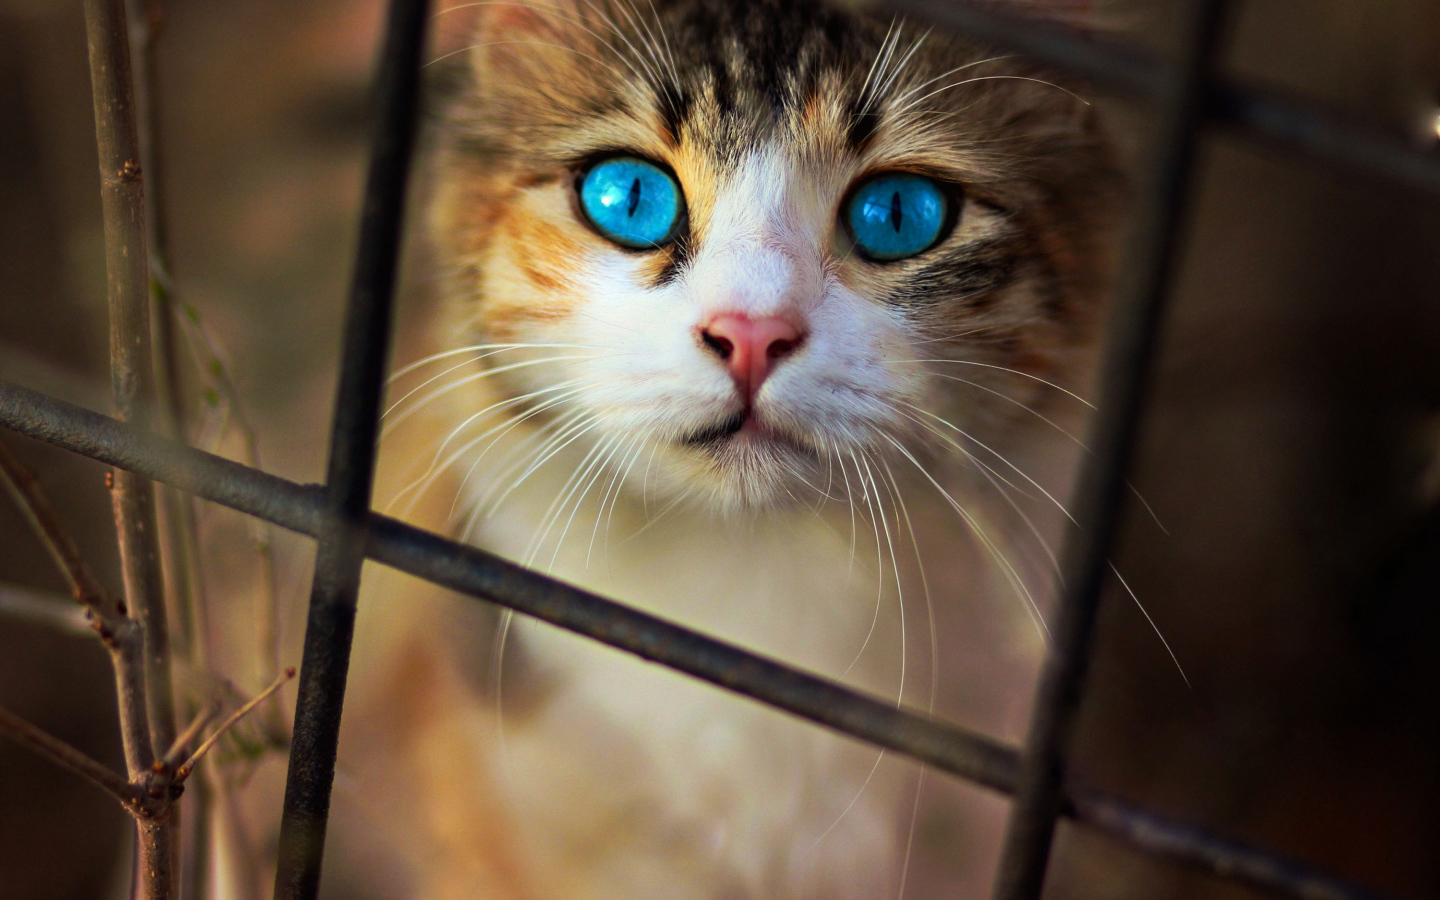 Красивый голубоглазый кот смотрит через решетку